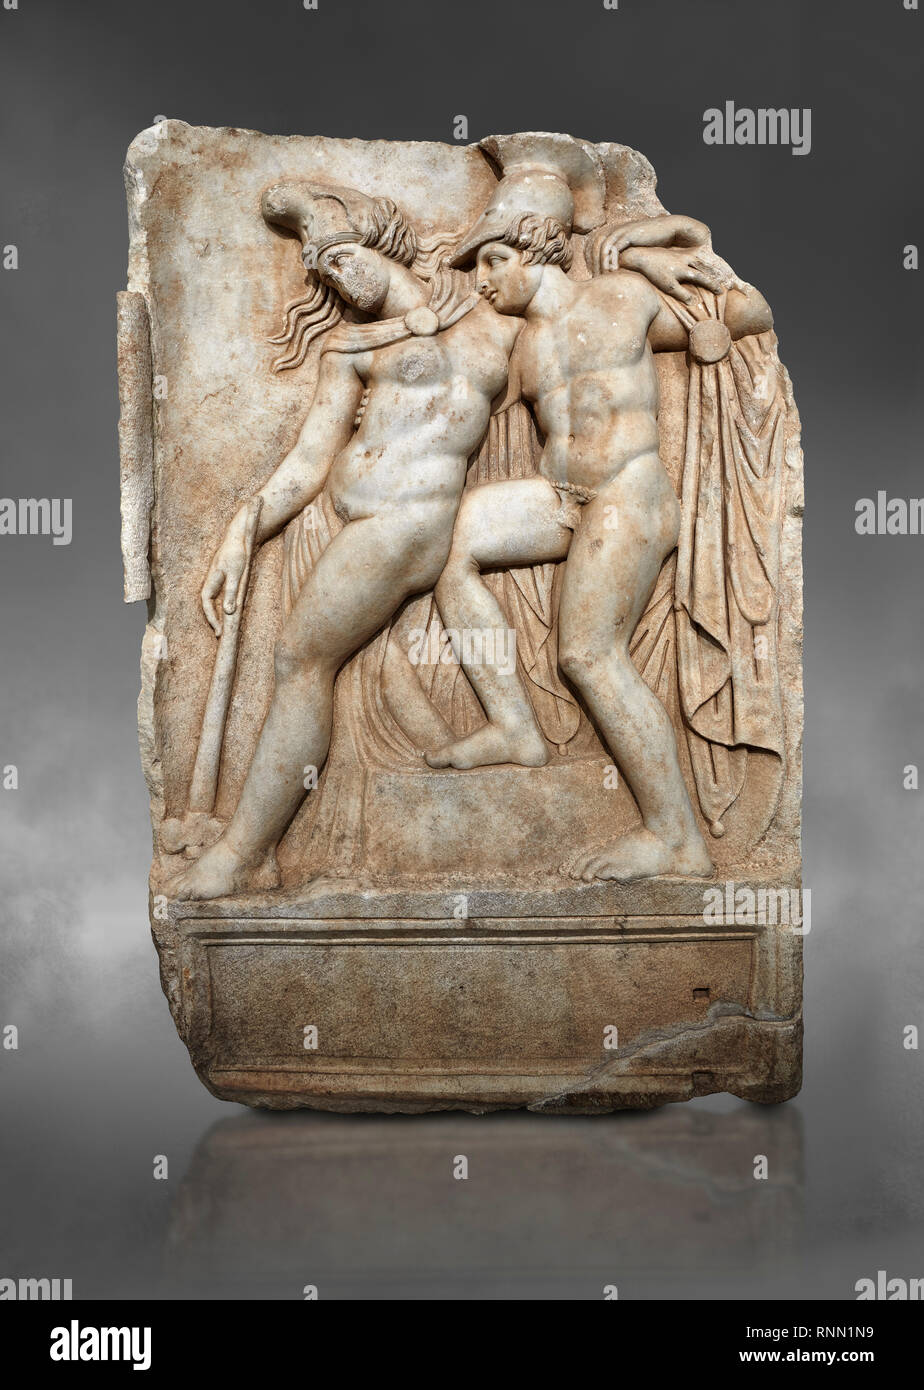 Römische Sebasteion Relief von Achilles und eine sterbende Amazon, Afrodisias Museum, Aphrodisias, Türkei. Vor grauem Hintergrund. Achilles-Support Stockfoto